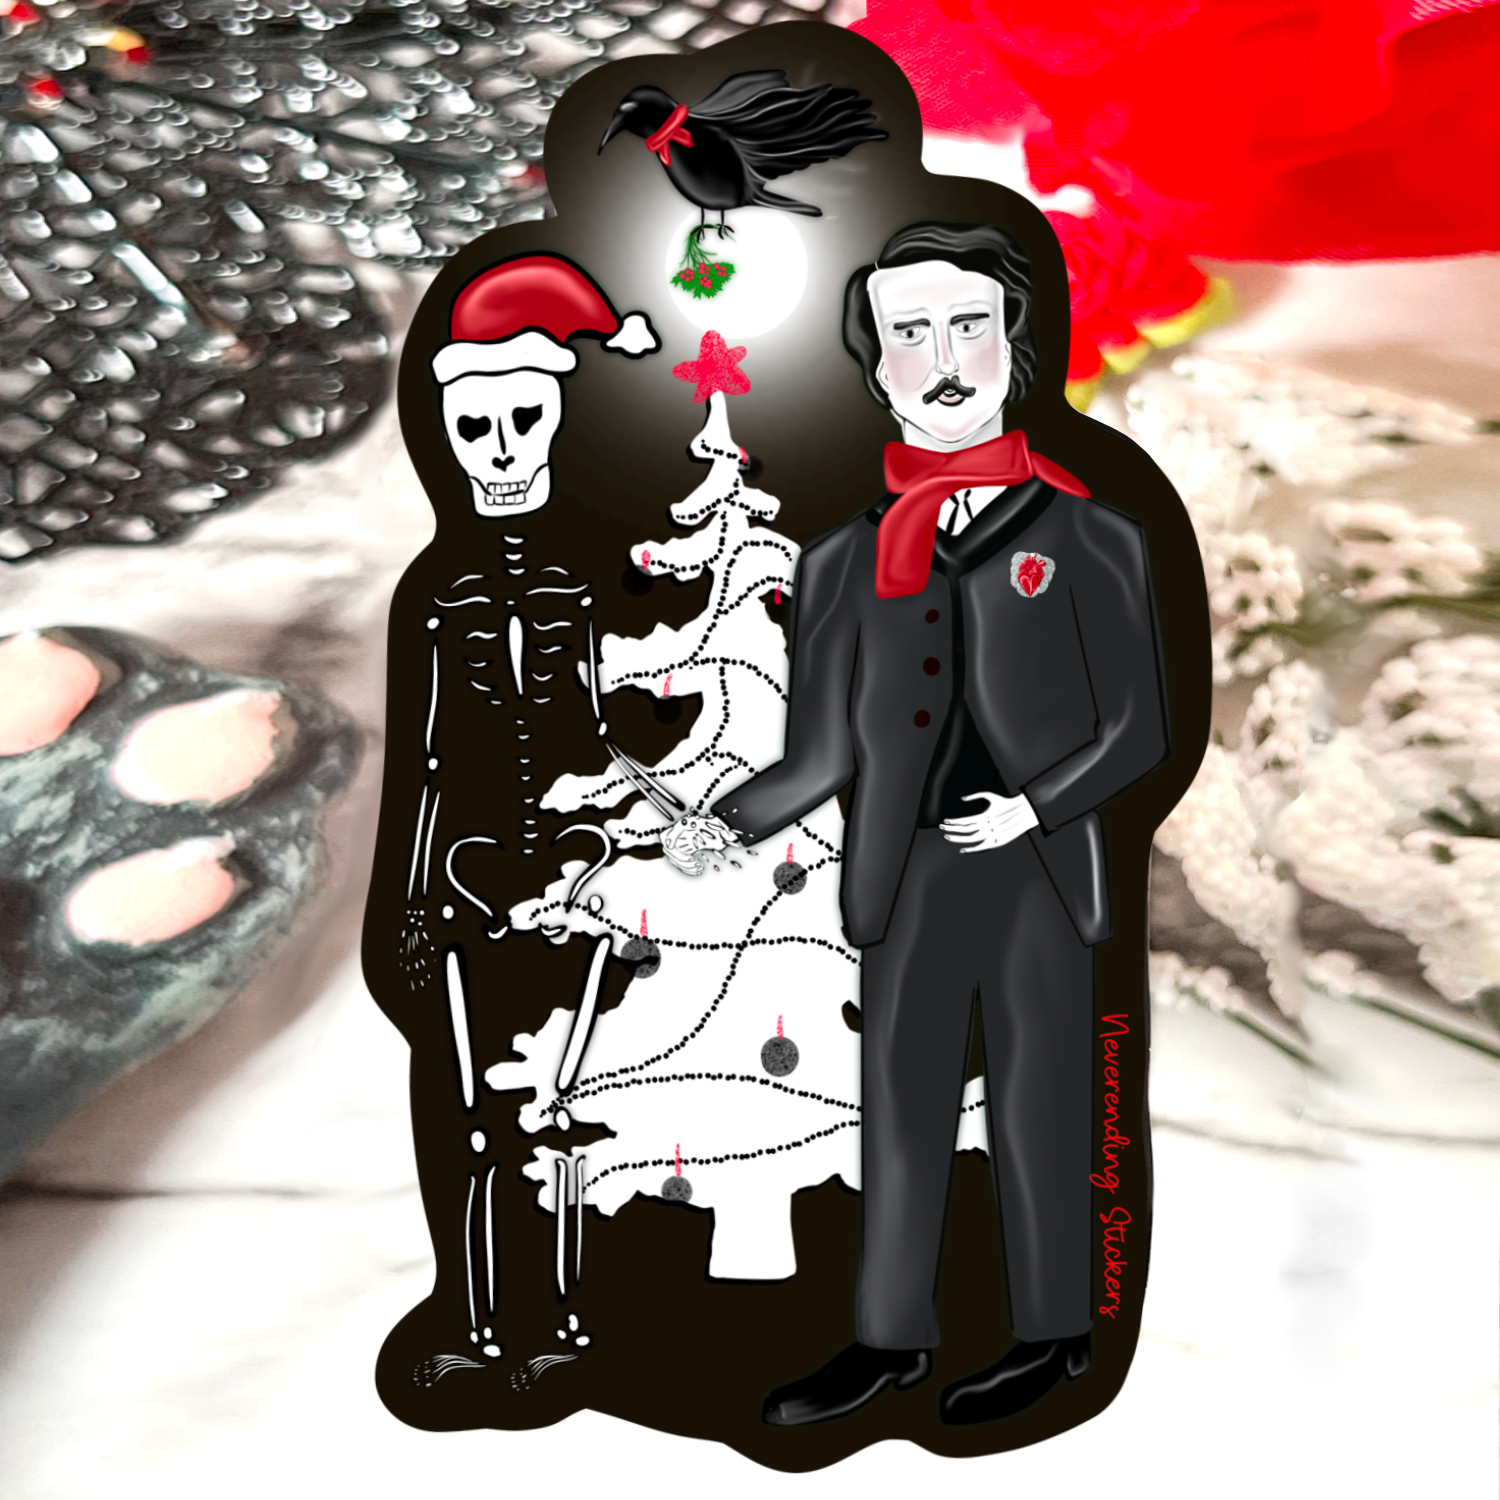 Neverending Stickers - Edgar Allan Poe Creepy Christmas Skeleton Hand - 3.75x2.8in - Vinyl Sticker or Magnet .